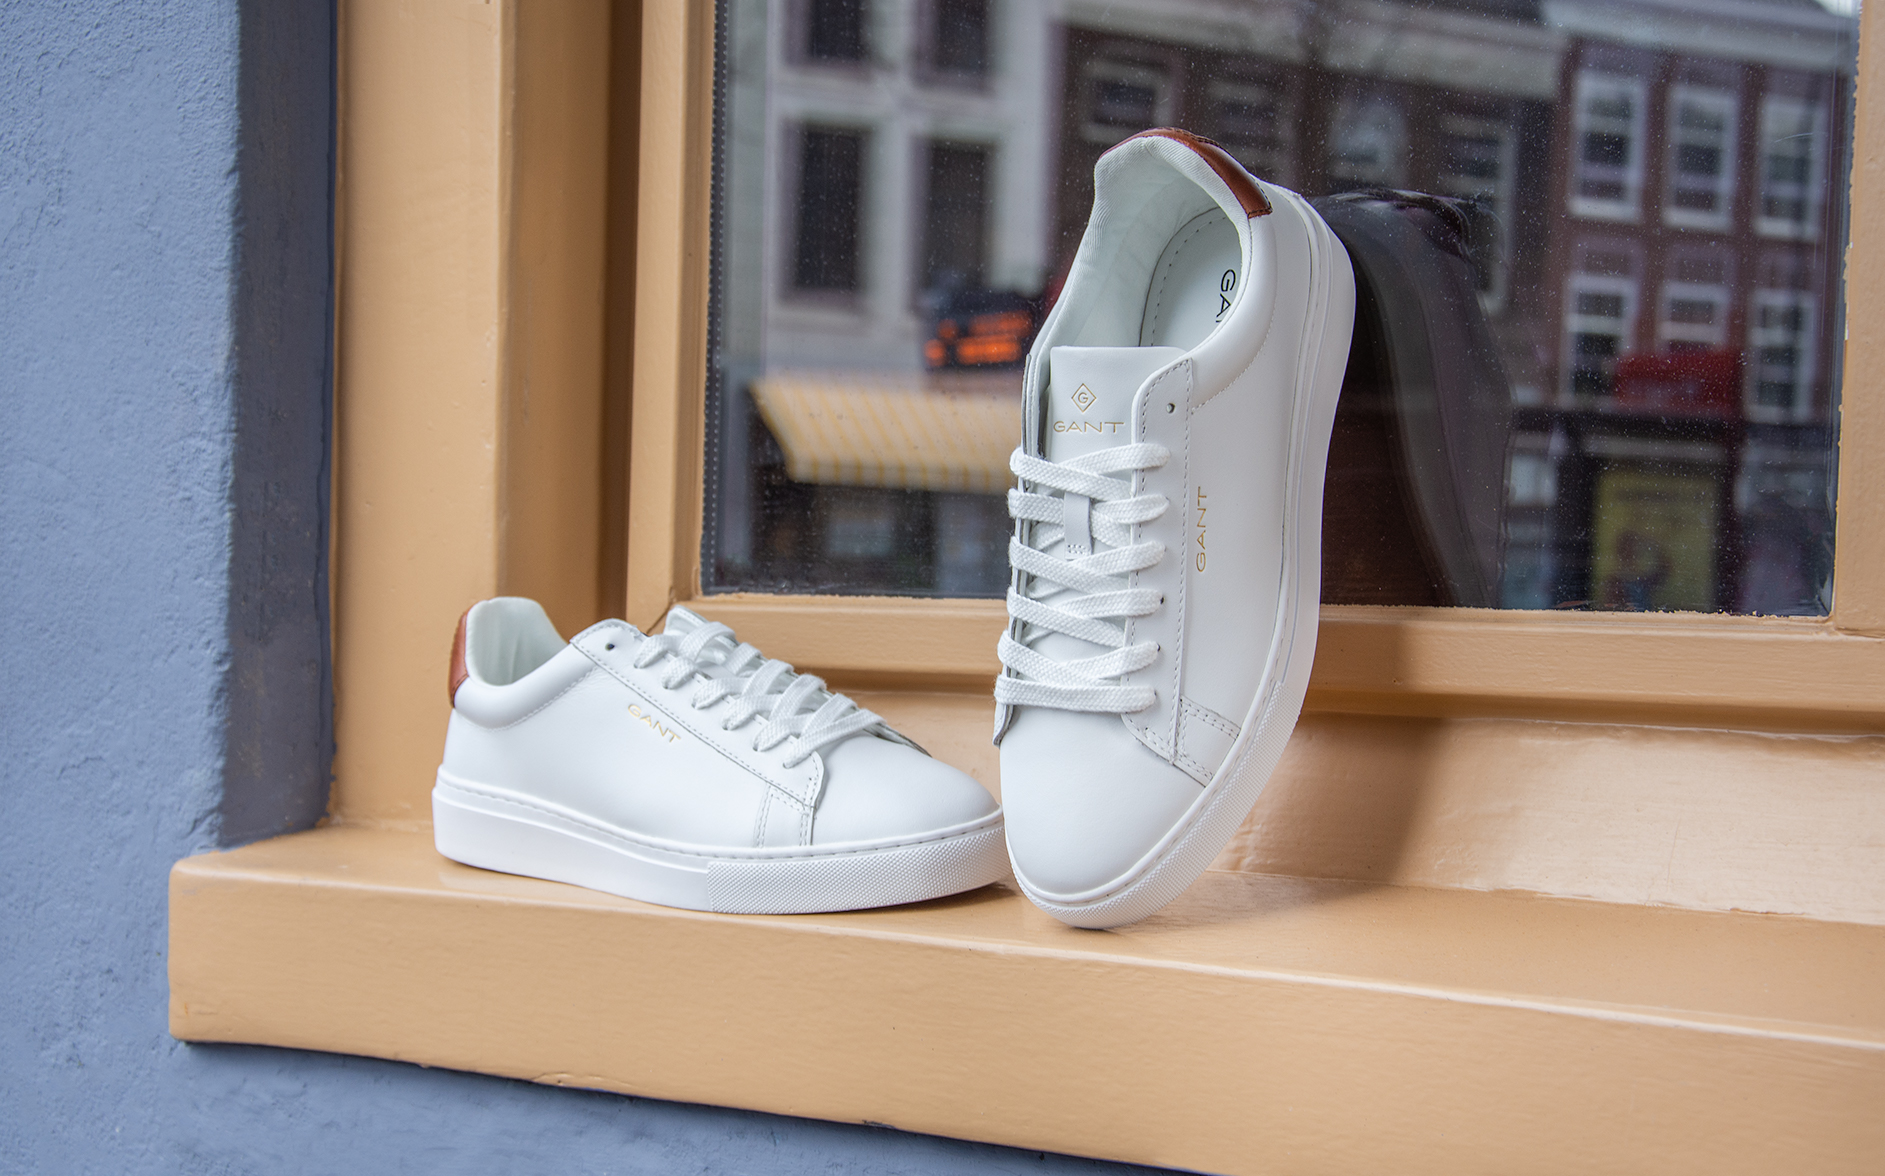 Gespierd maak een foto Citroen Hoe houd je witte sneakers schoon | SHUZ Blog